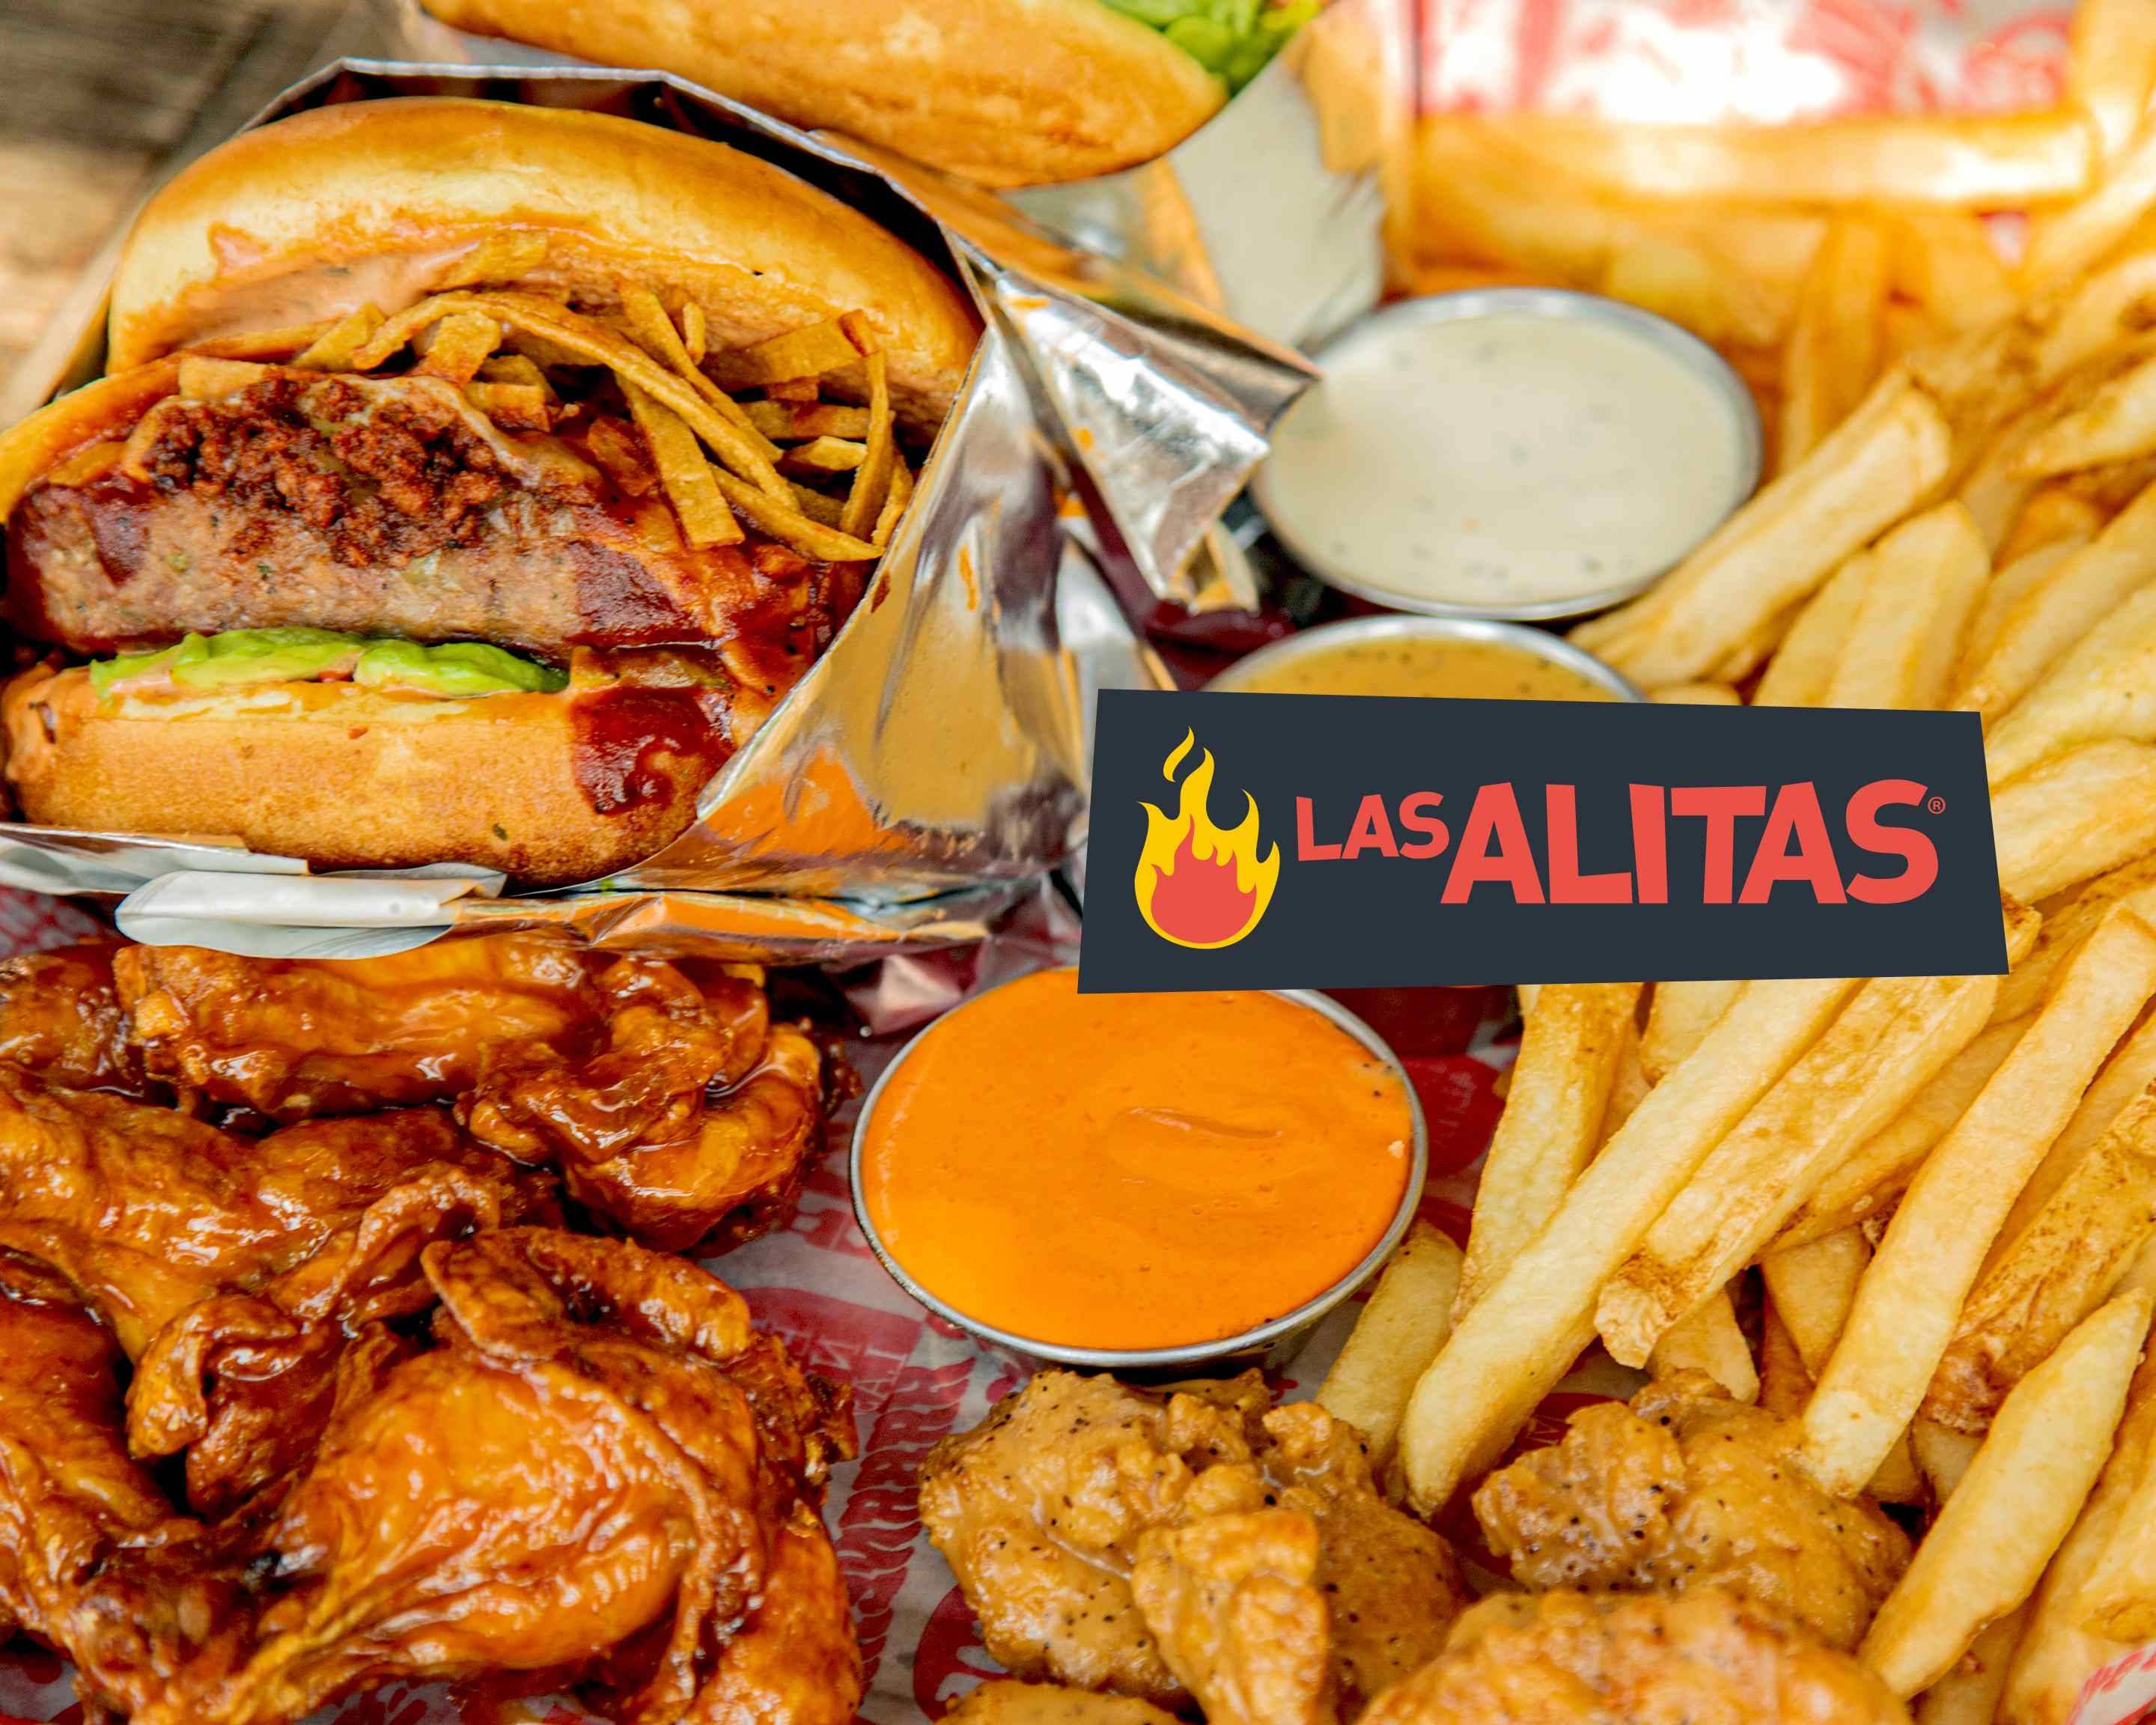 Las Alitas Via Vallejo Menu Delivery【Menu & Prices】Mexico City | Uber Eats